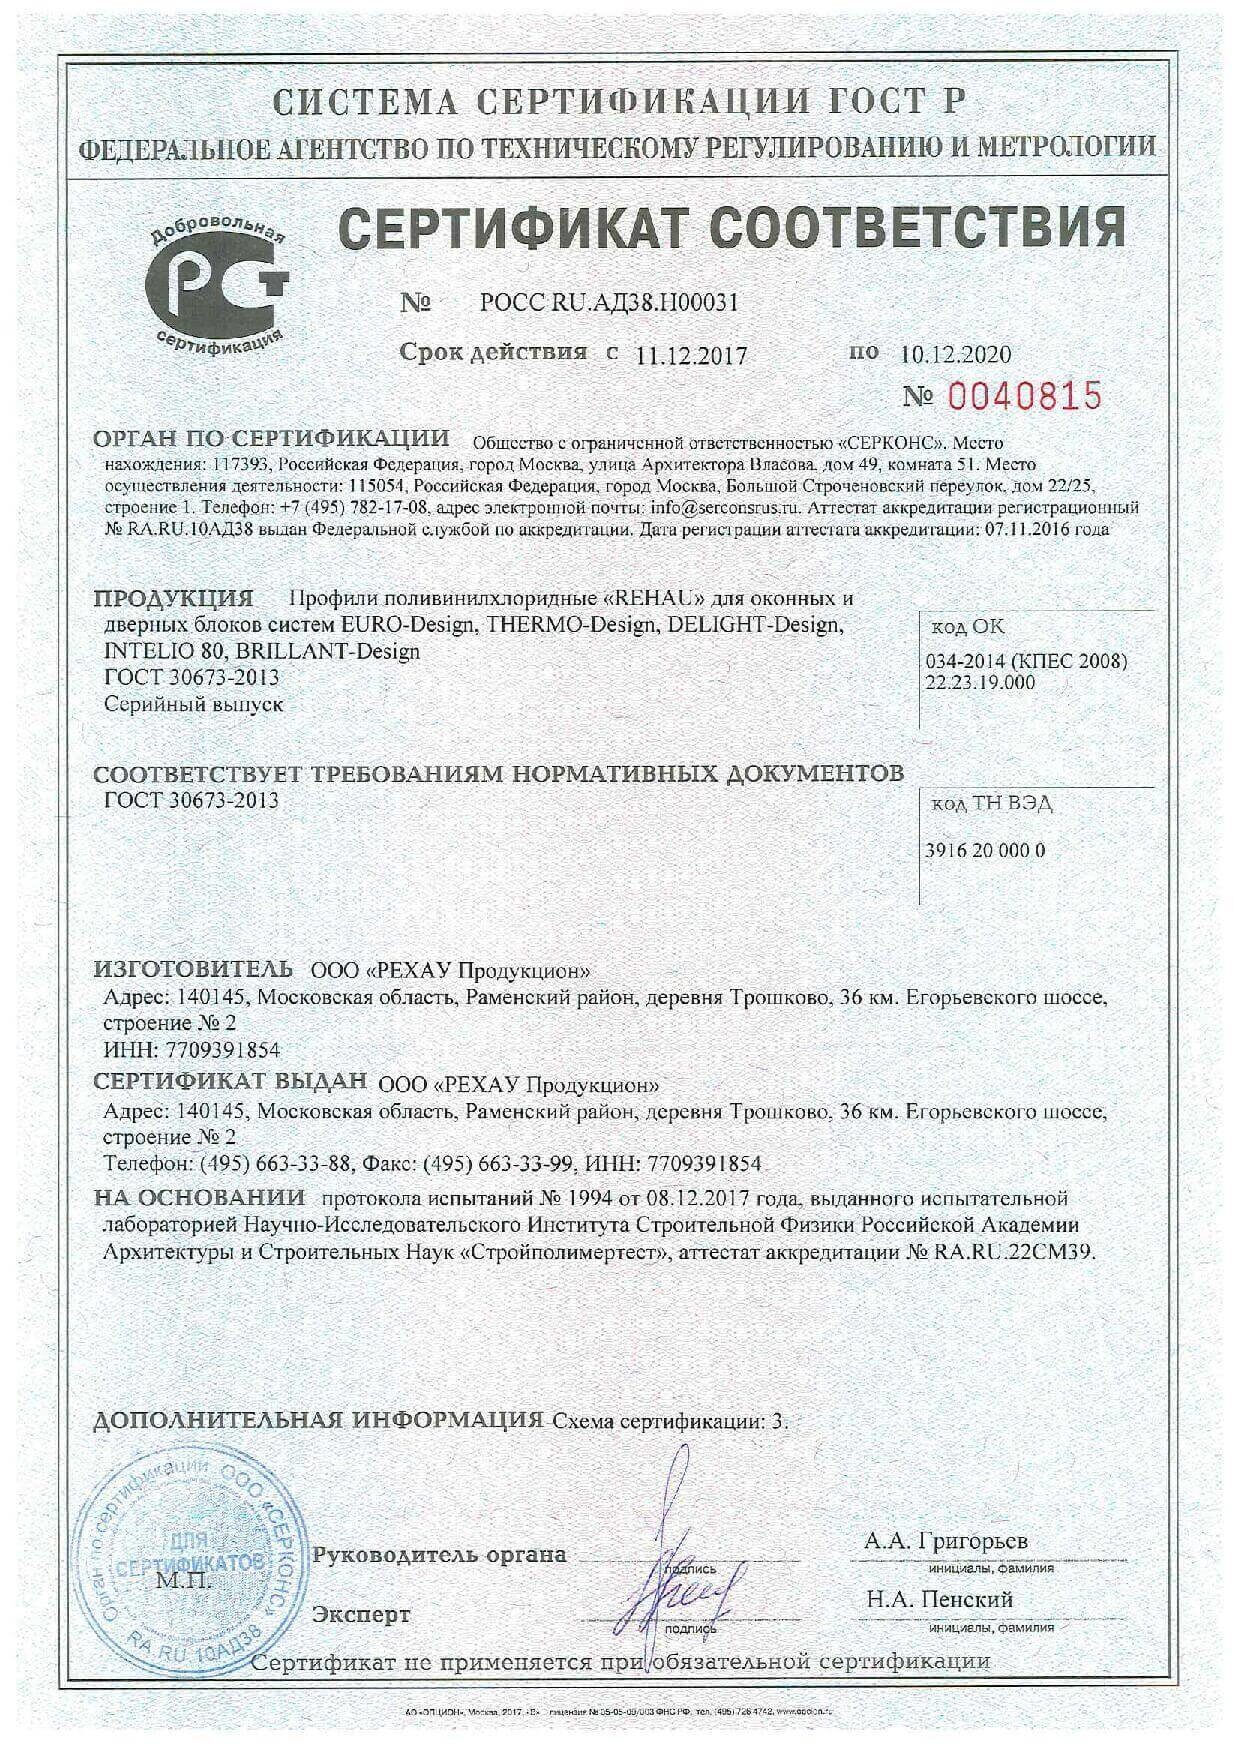 Сертификат соответсвия Гжель (Интелио 80) до 2020